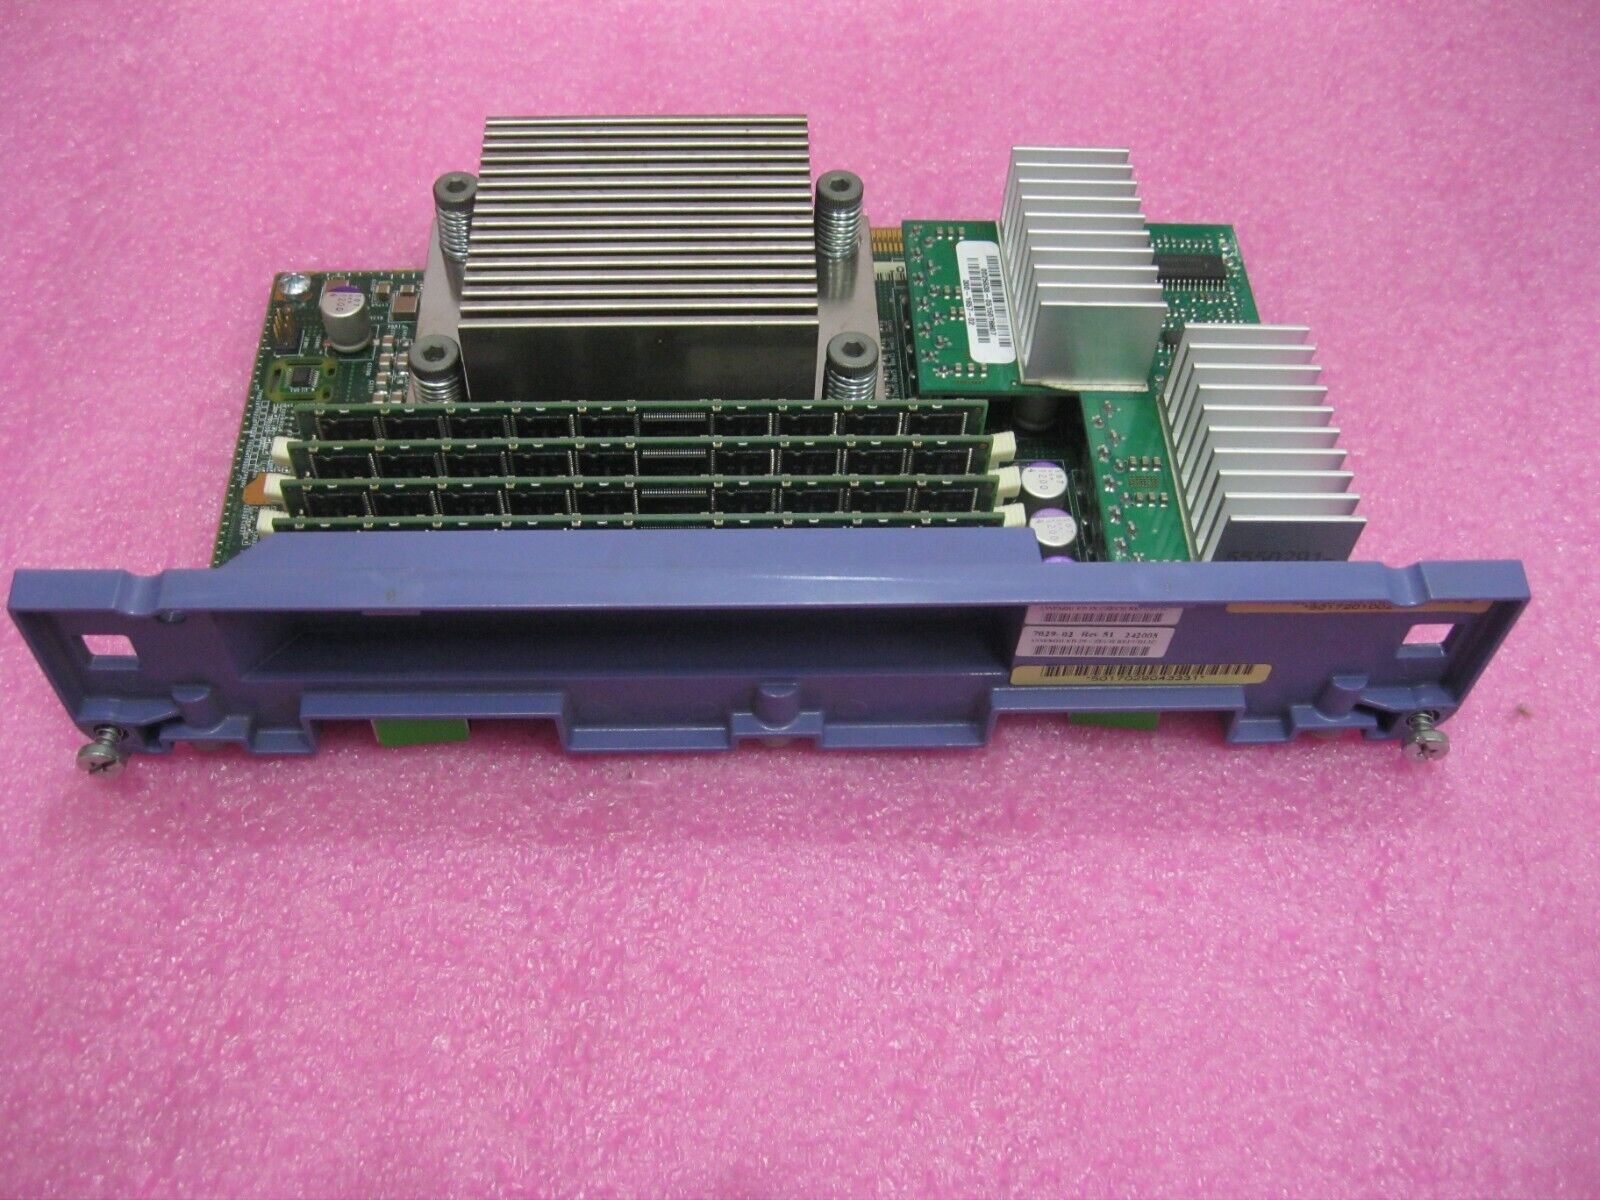 Sun V440 1.28Ghz CPU 501-7029  CPU/Memory Module with 2GB Memory - B3C05